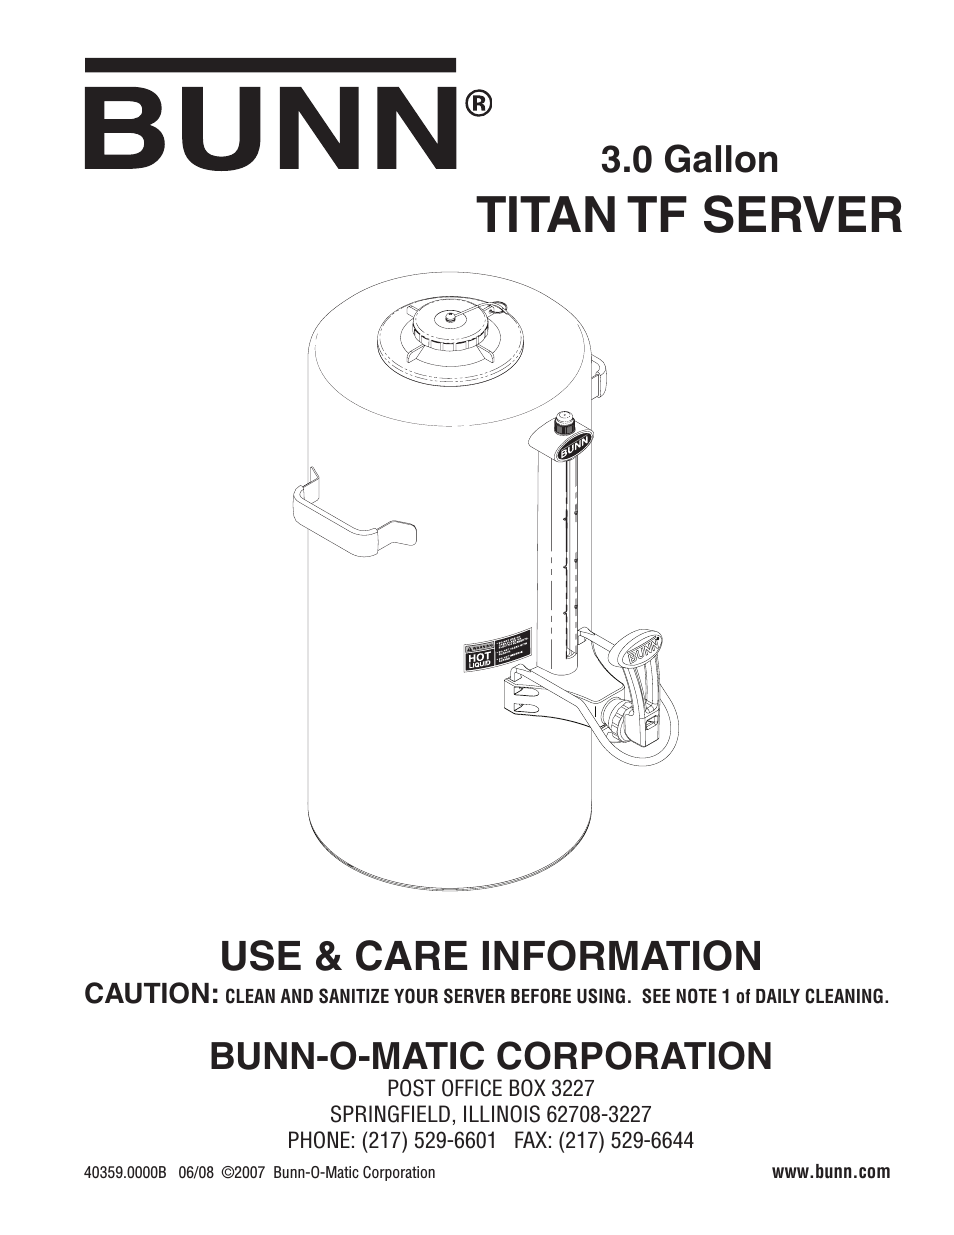 Server TITAN TF